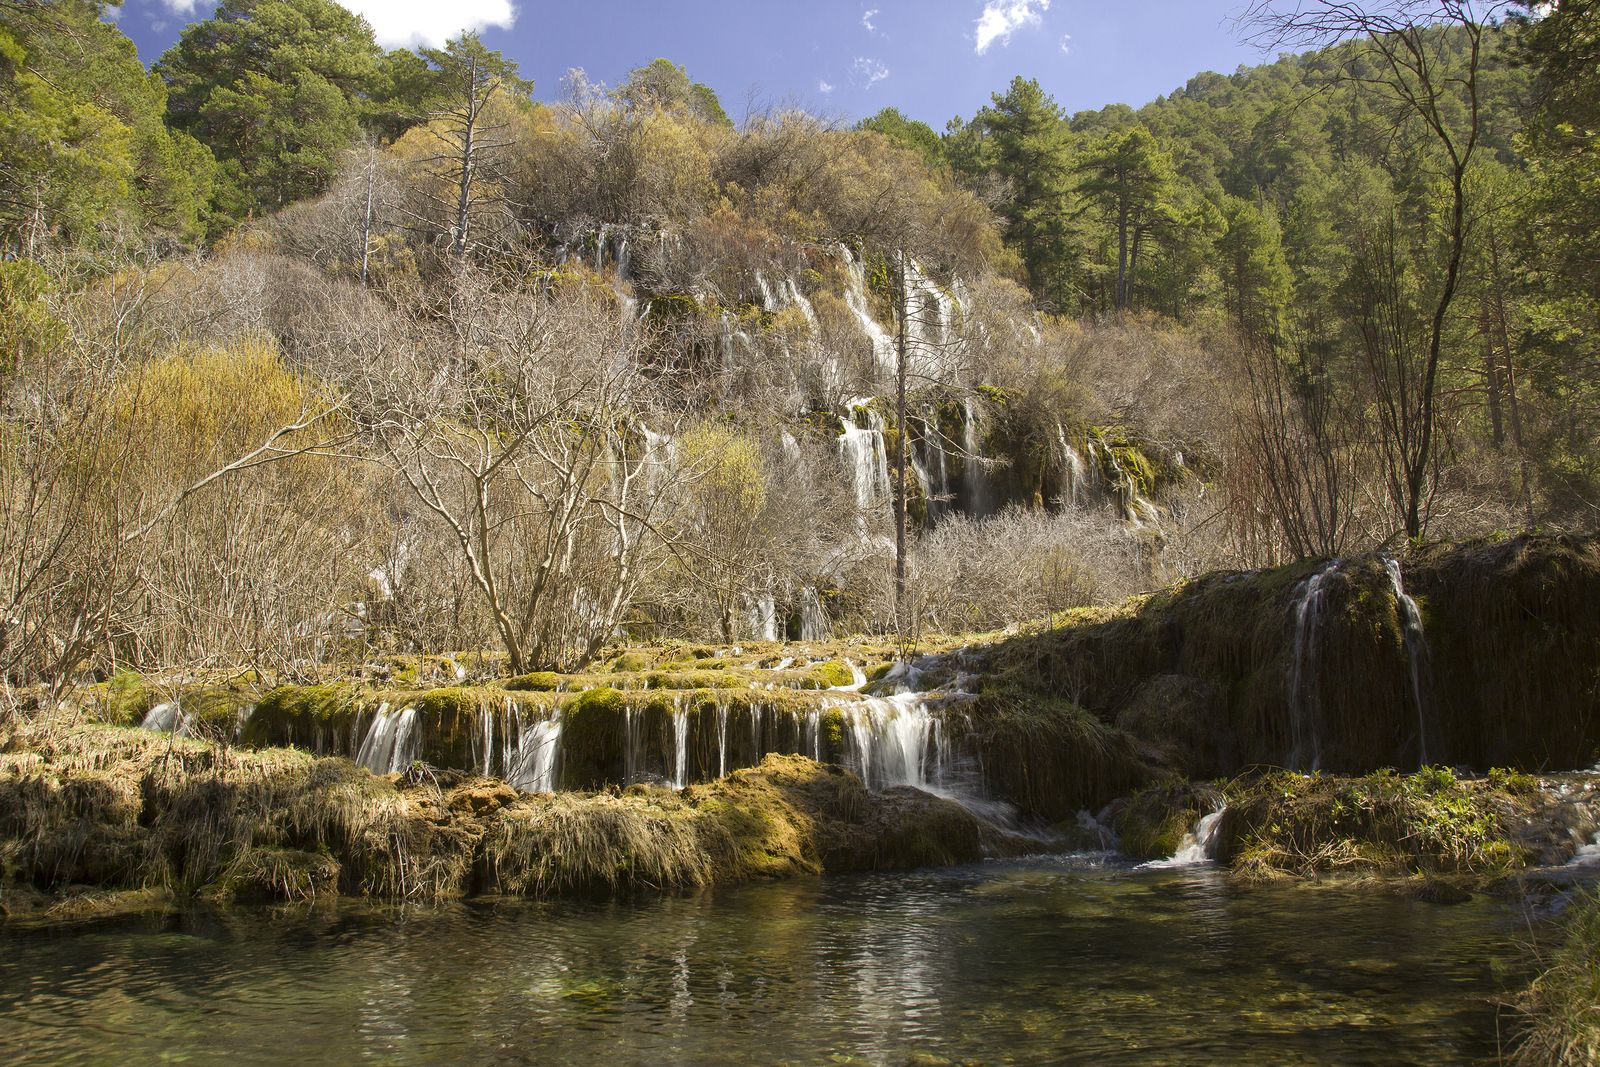  Los nacimientos de ríos más bellos que puedes encontrar en España: Nacimiento río Cuervo España (bigstock)